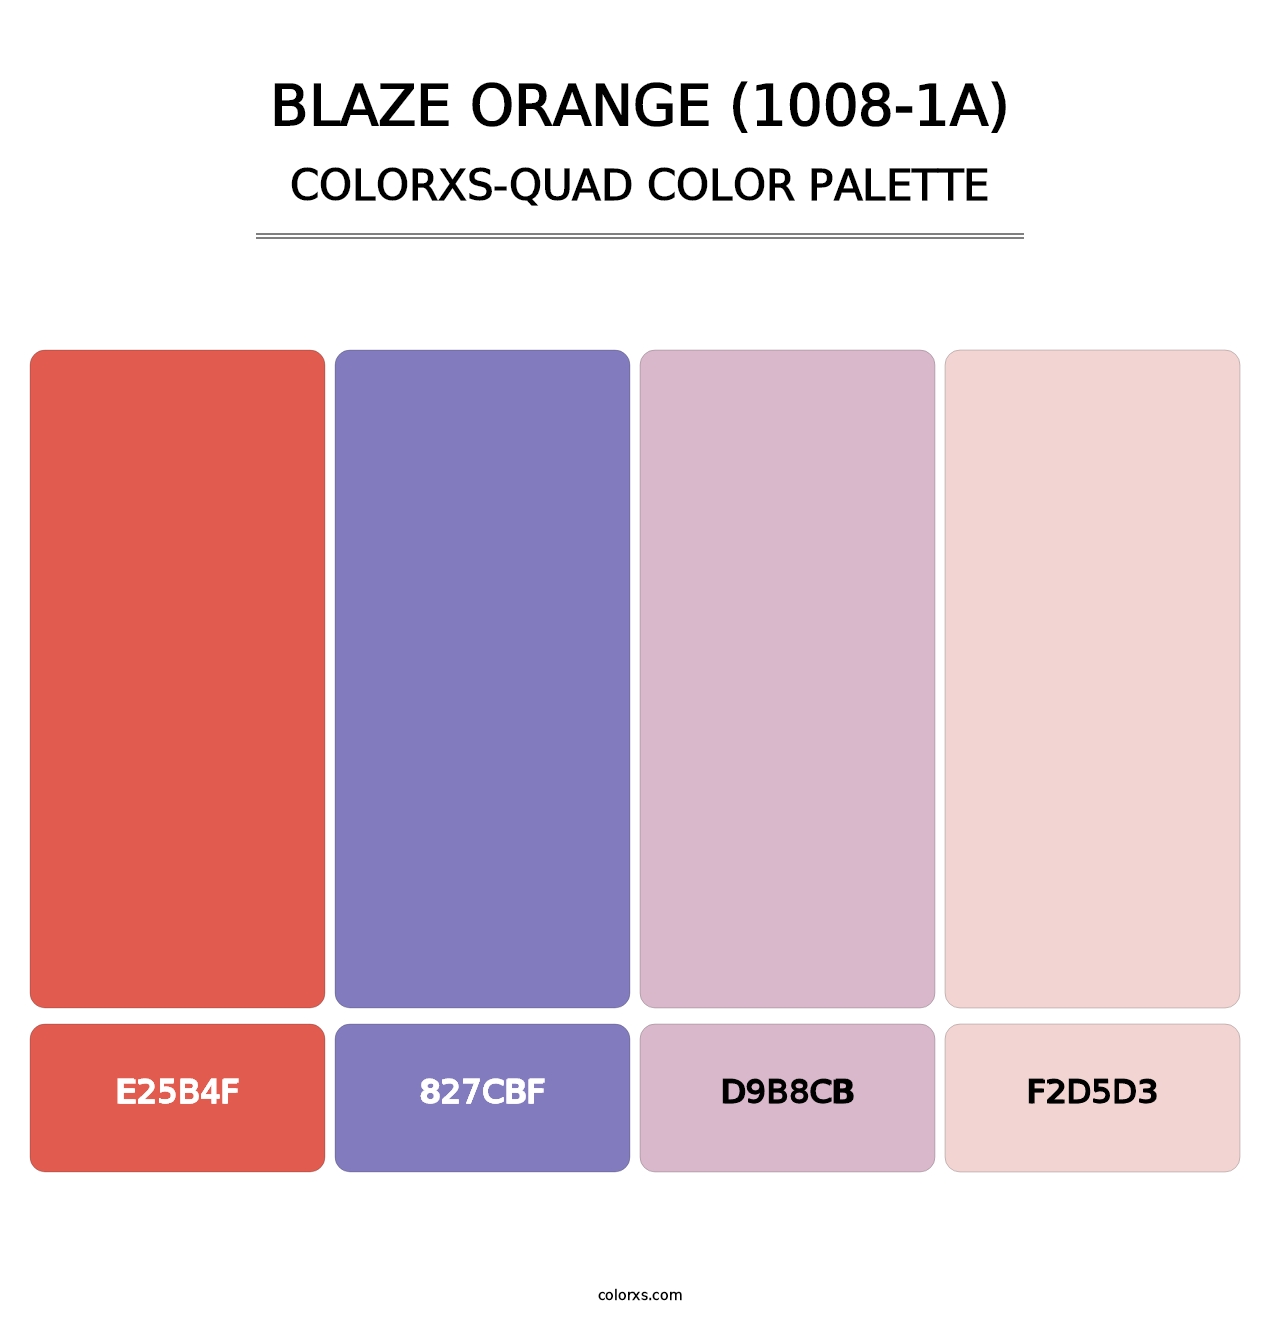 Blaze Orange (1008-1A) - Colorxs Quad Palette